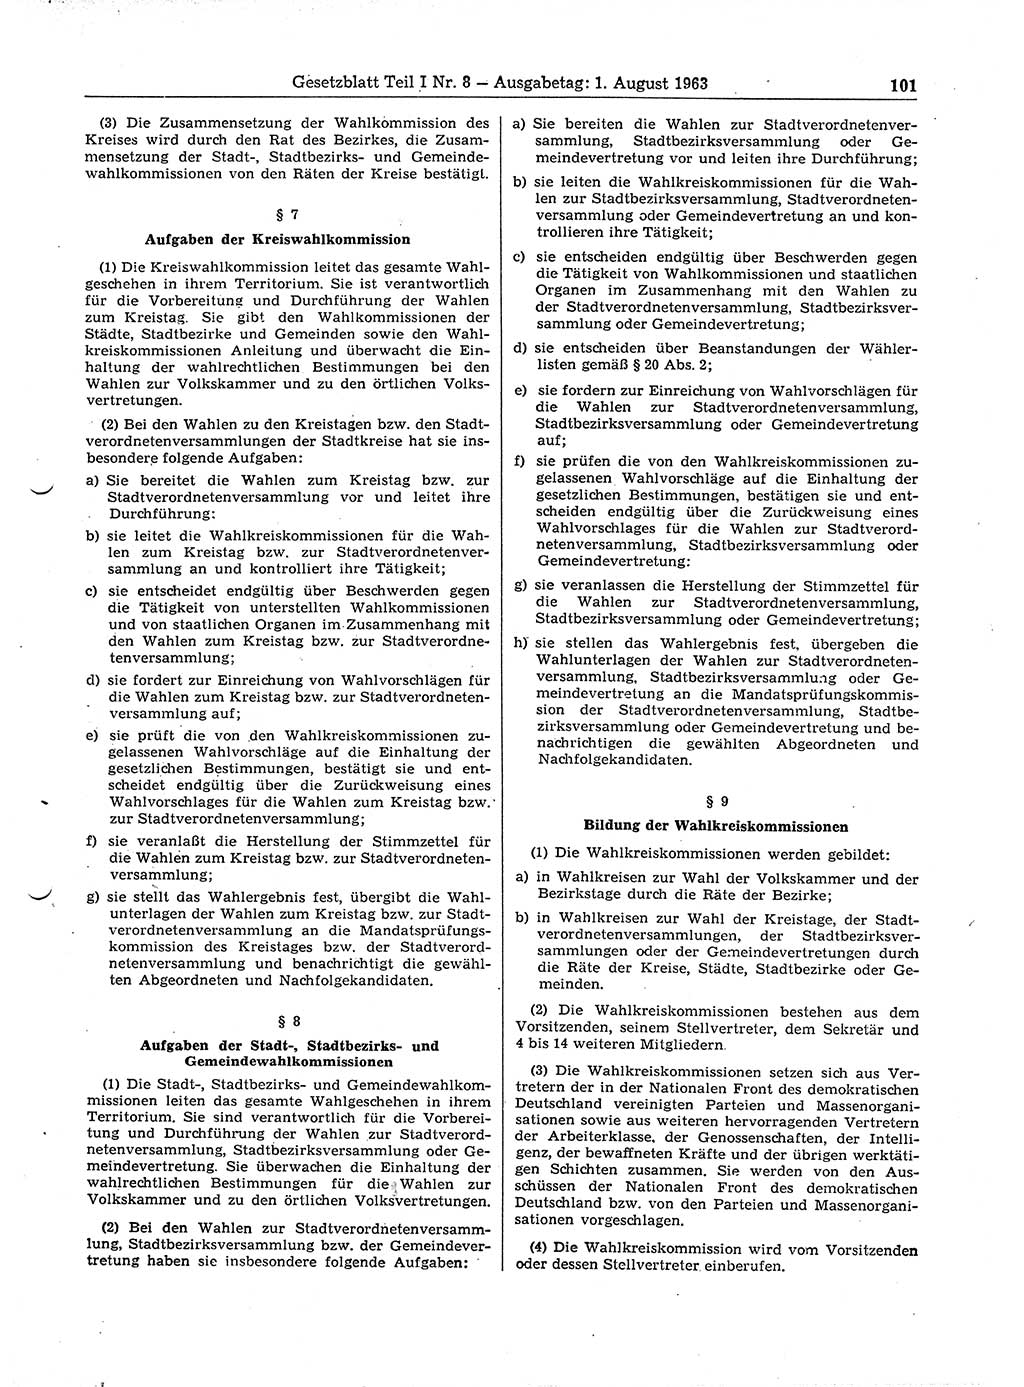 Gesetzblatt (GBl.) der Deutschen Demokratischen Republik (DDR) Teil Ⅰ 1963, Seite 101 (GBl. DDR Ⅰ 1963, S. 101)